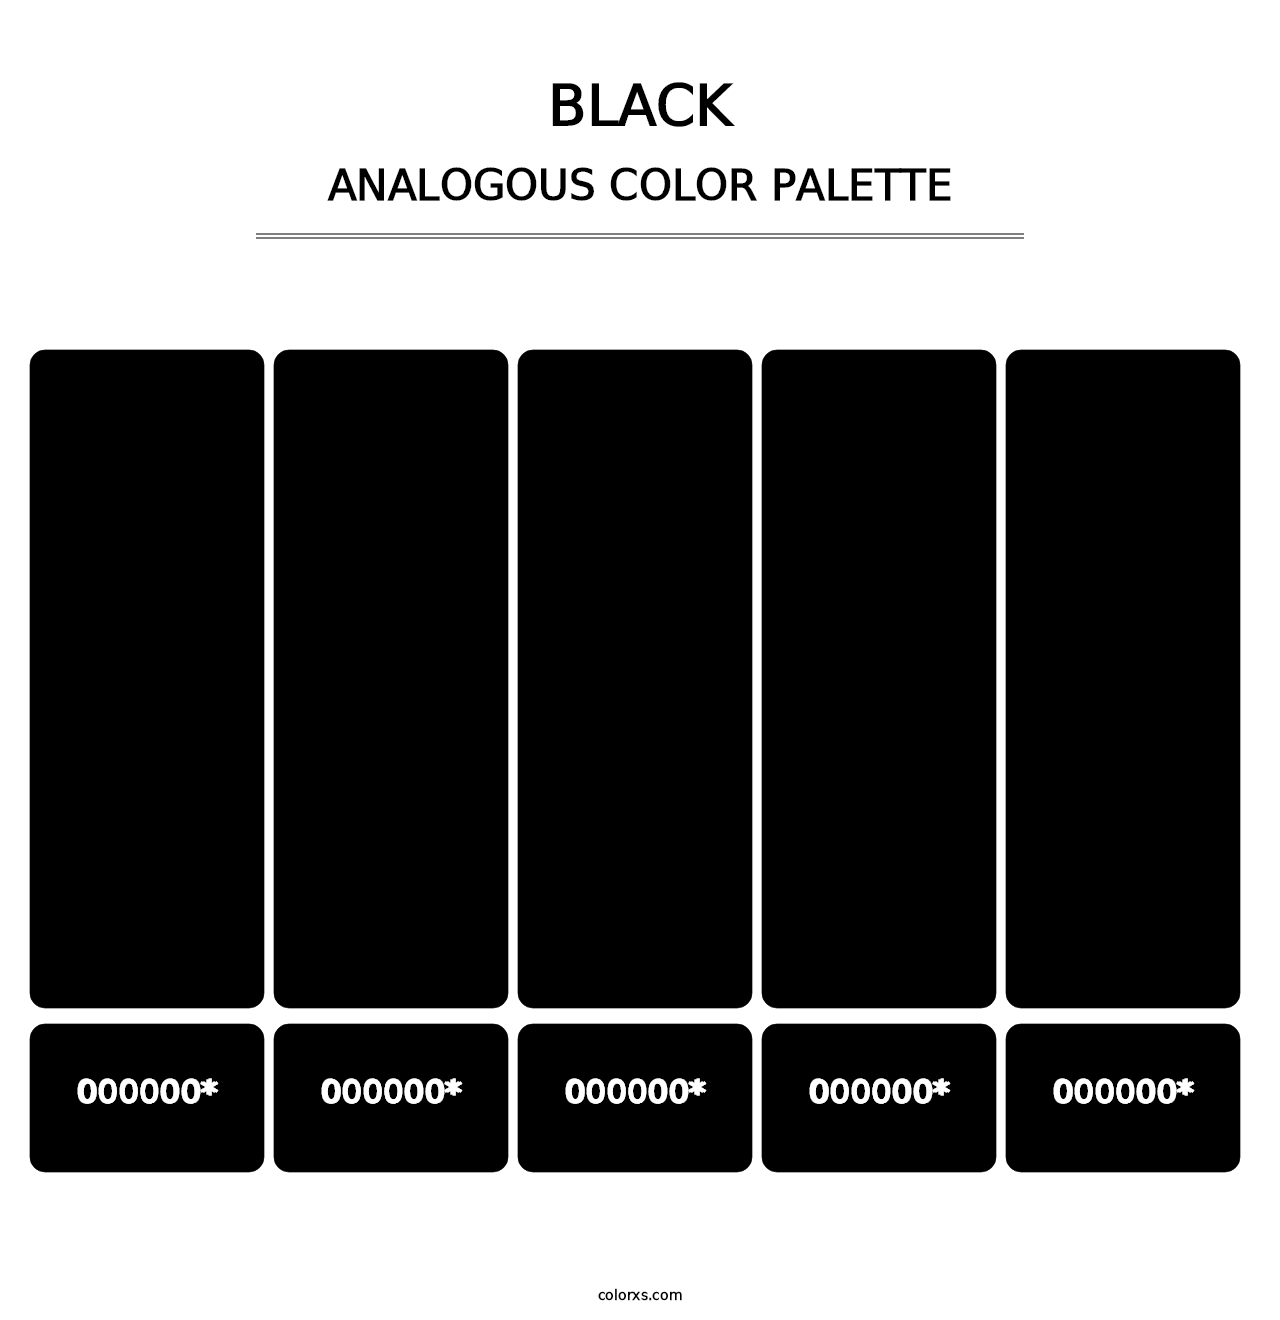 Black - Analogous Color Palette